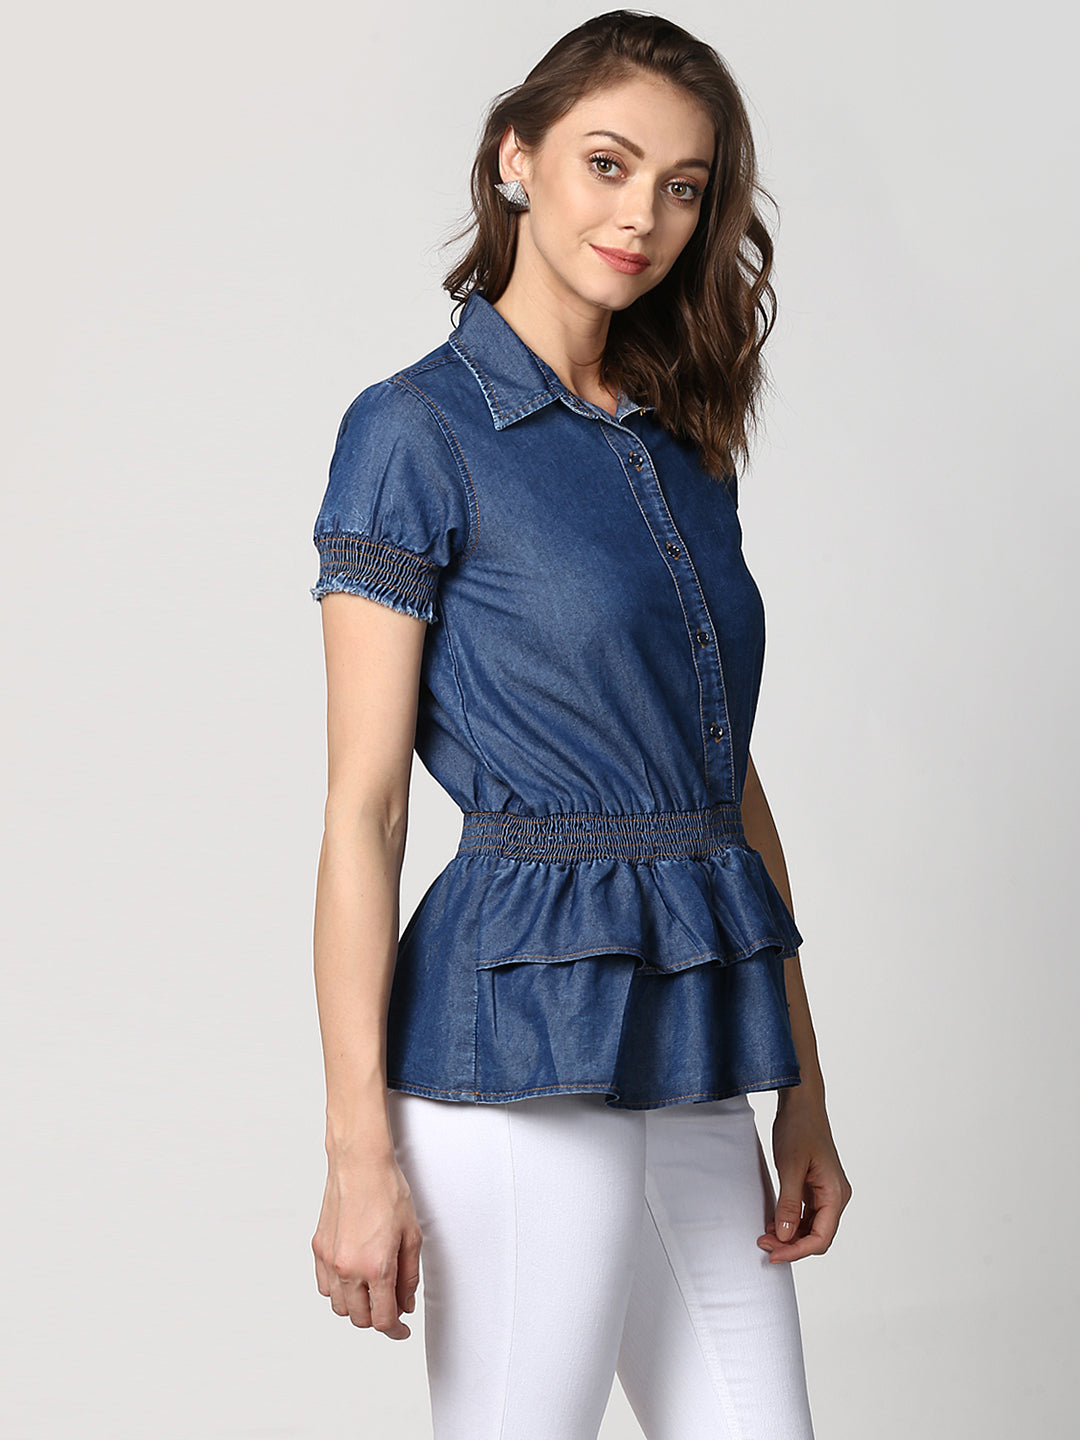 Women's Navy Blue Denim Peplum Top cum Shirt with elasticated waistband